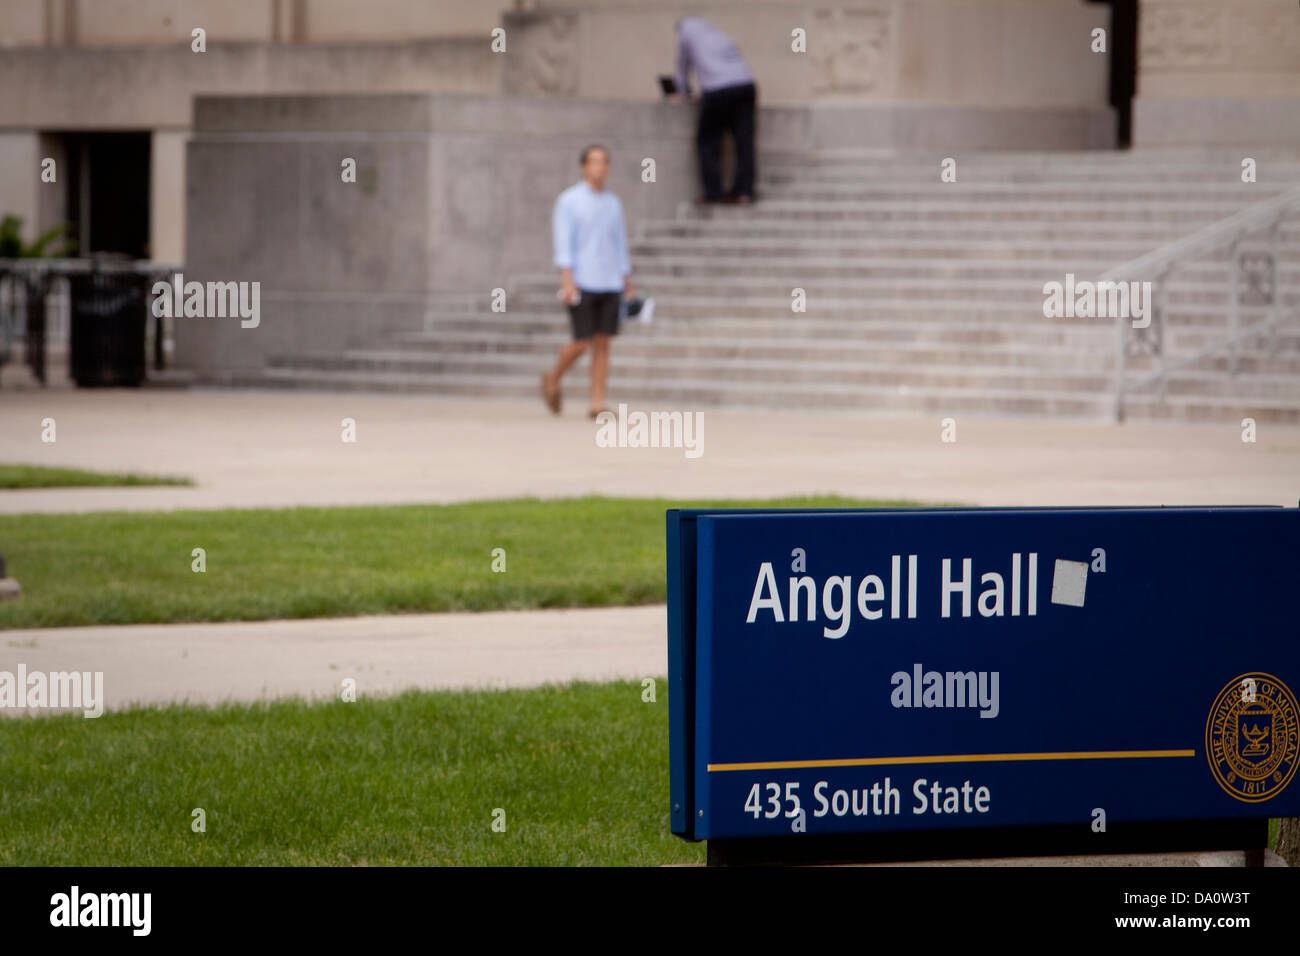 La Angell edificio Hall della University of Michigan è visto in Ann Arbor, Michigan Foto Stock